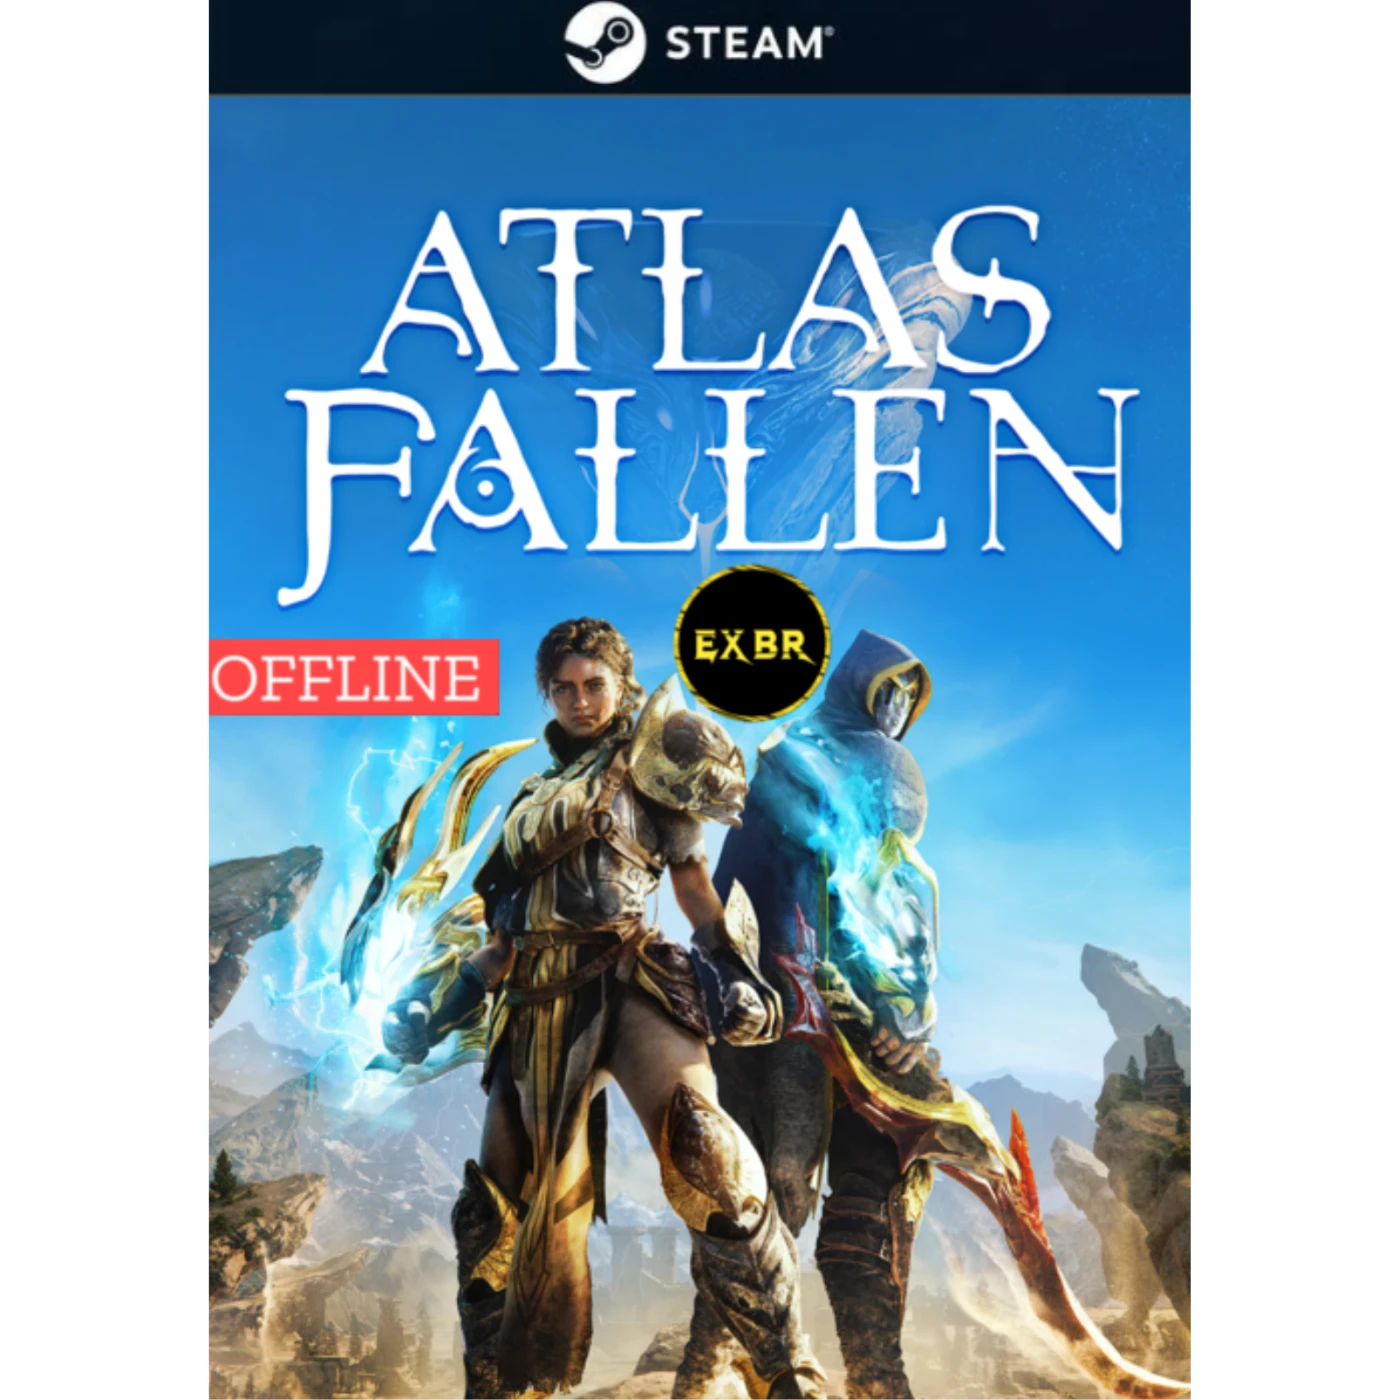 Lords of the Fallen PC Offline - EXBR Games - EXBR Games - Sua loja digital  de jogos baratos